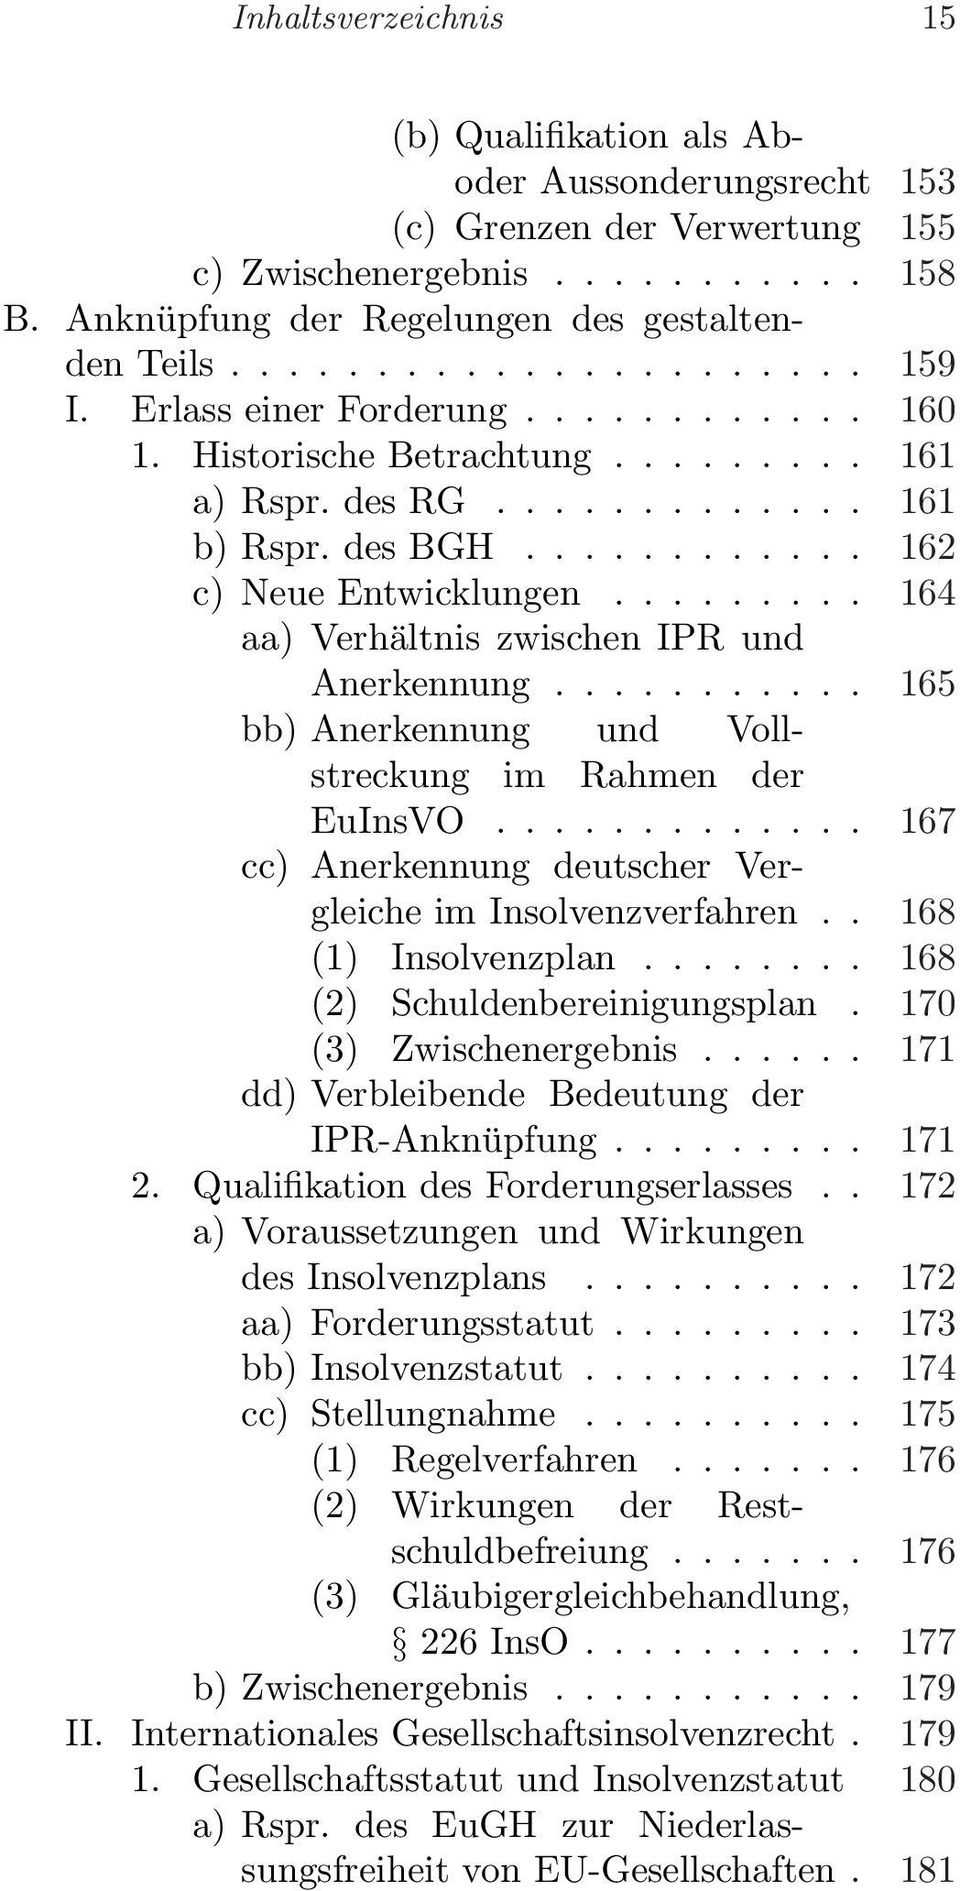 ........ 164 aa) Verhältnis zwischen IPR und Anerkennung........... 165 bb) Anerkennung und Vollstreckung im Rahmen der EuInsVO............. 167 cc) Anerkennung deutscher Vergleiche im Insolvenzverfahren.